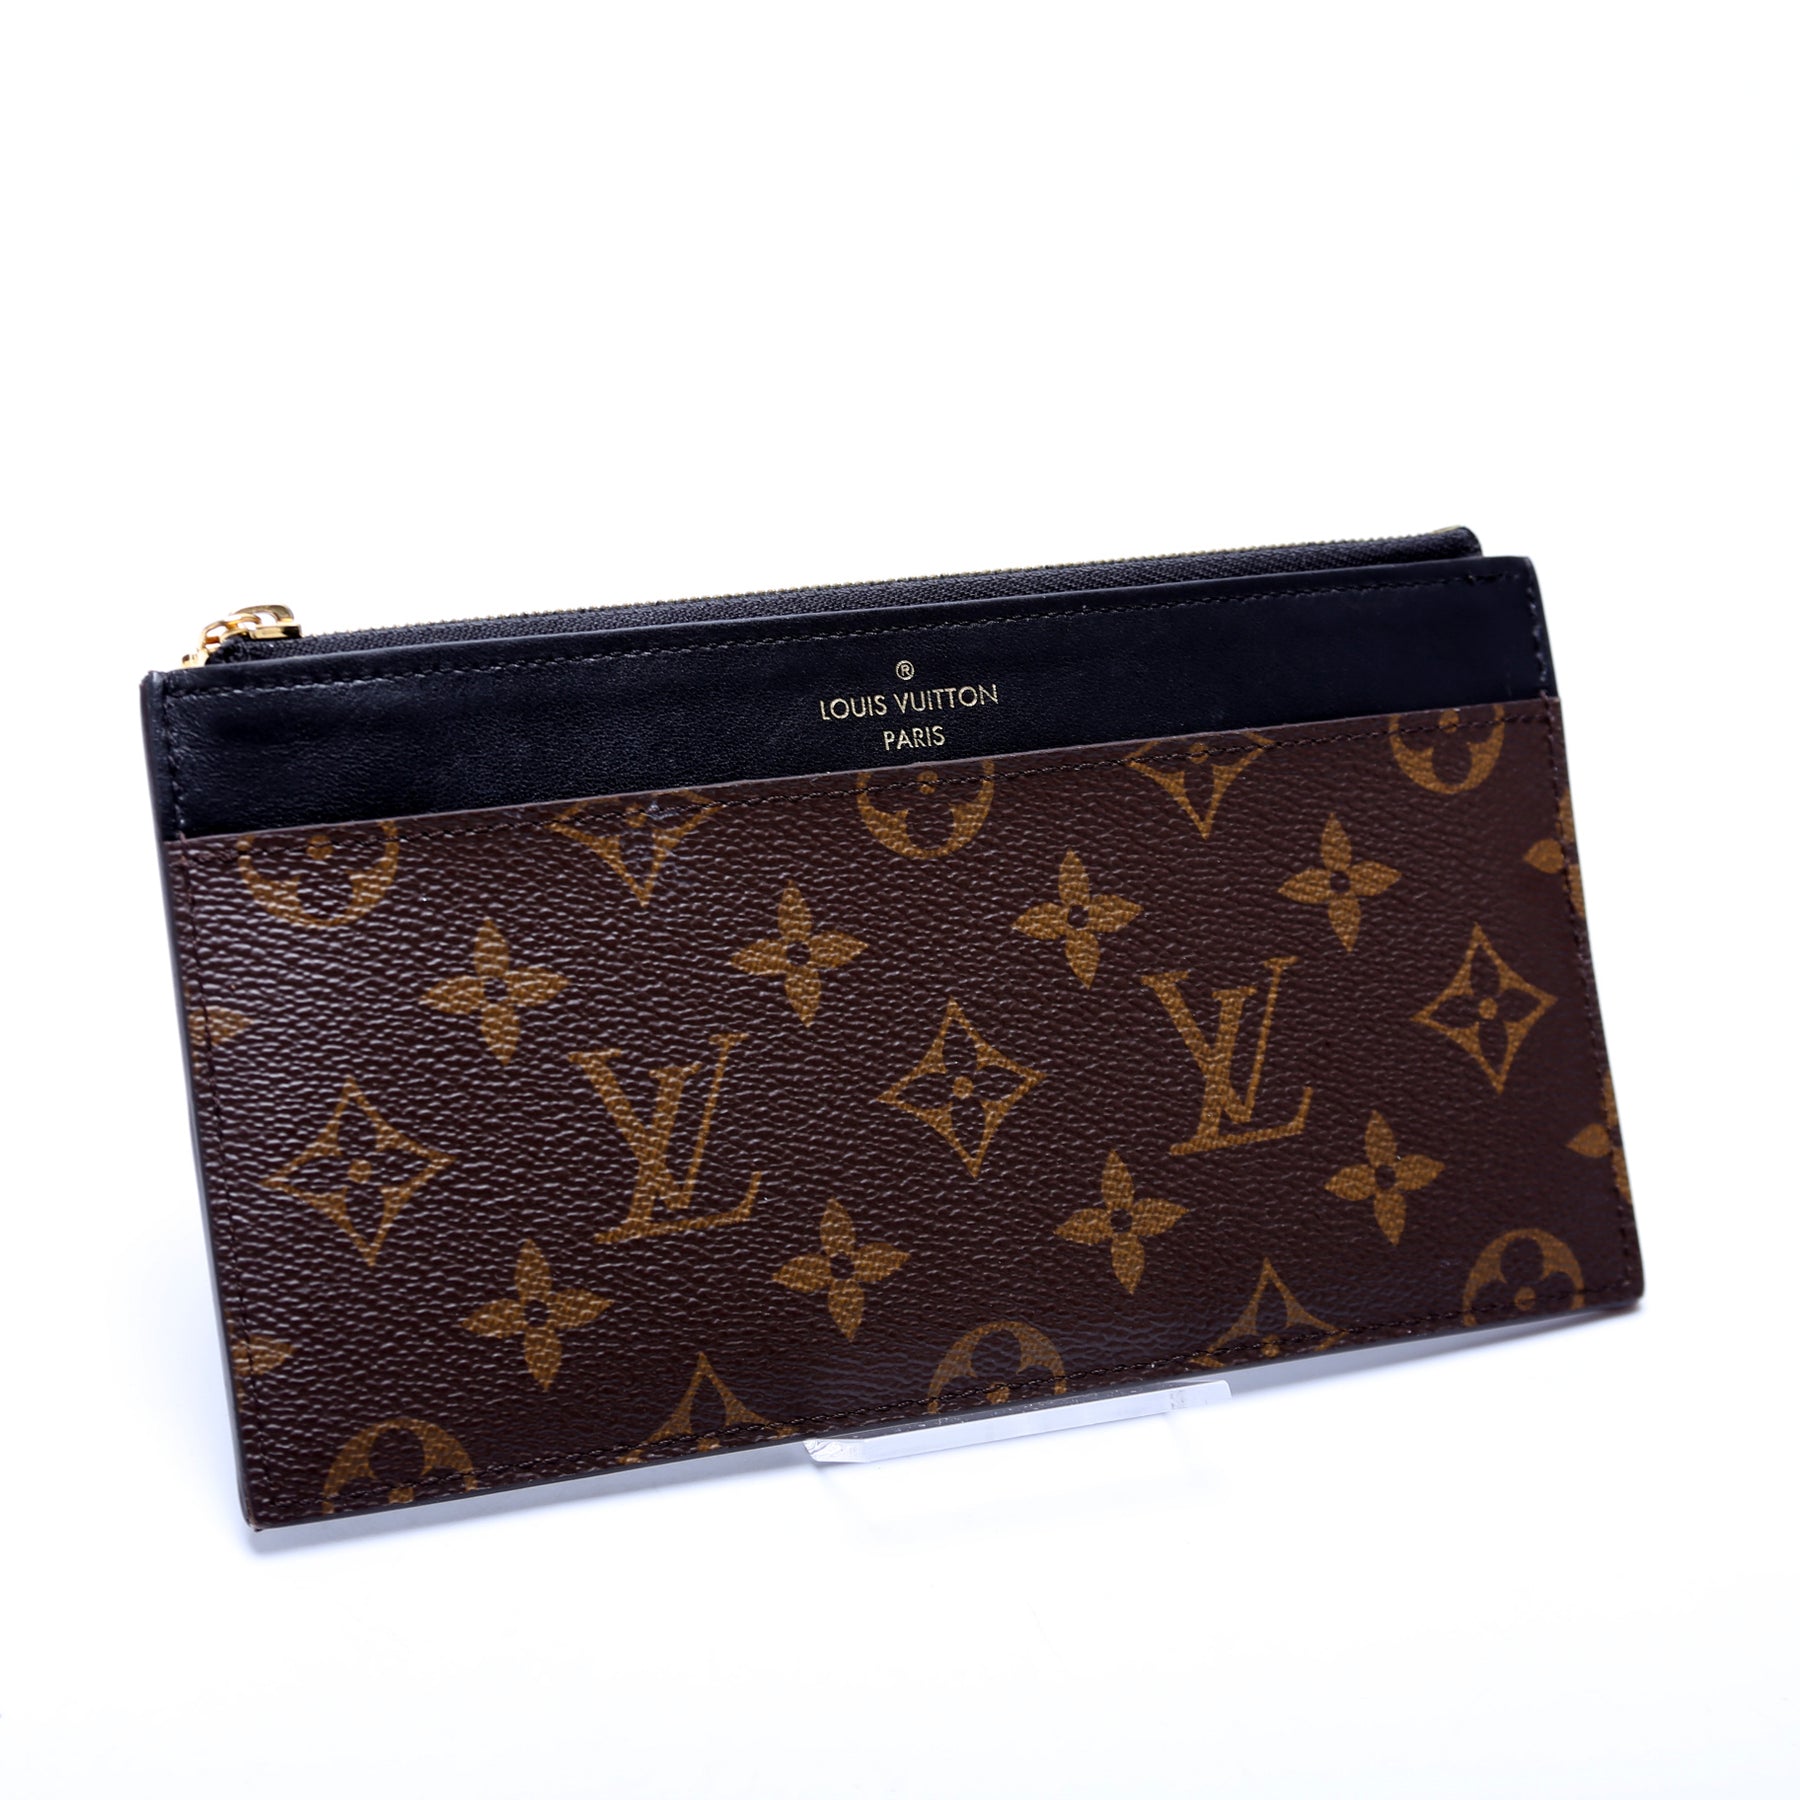 Louis Vuitton Slim Purse - Good or Bag